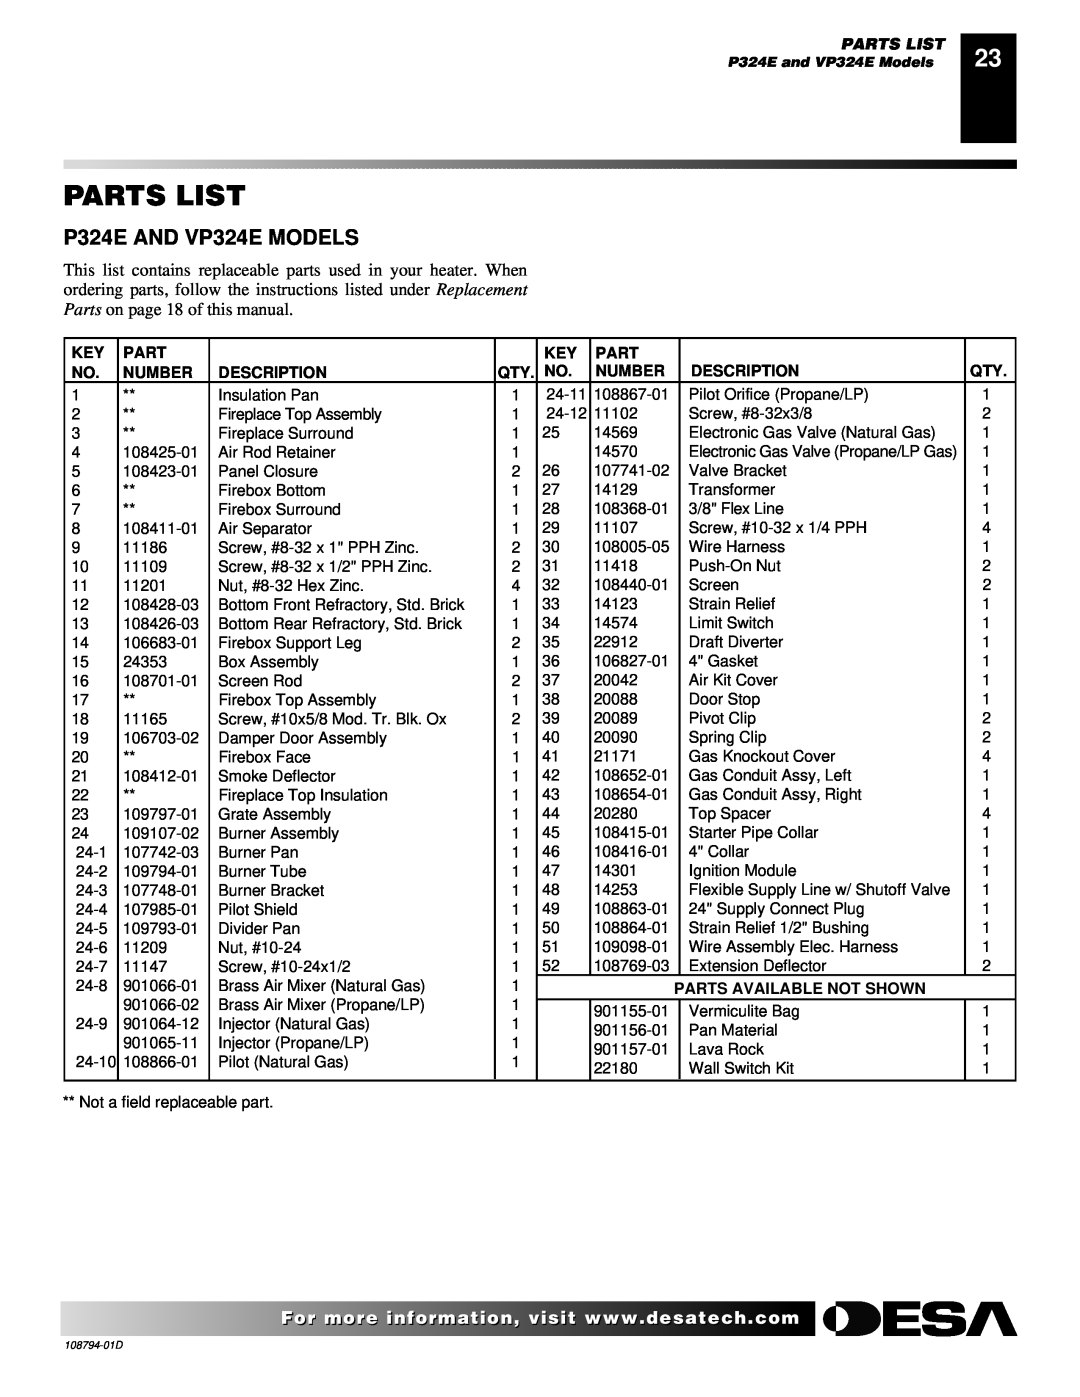 Desa VP325E(B) installation manual Parts List, Number, Description, Parts Available Not Shown 